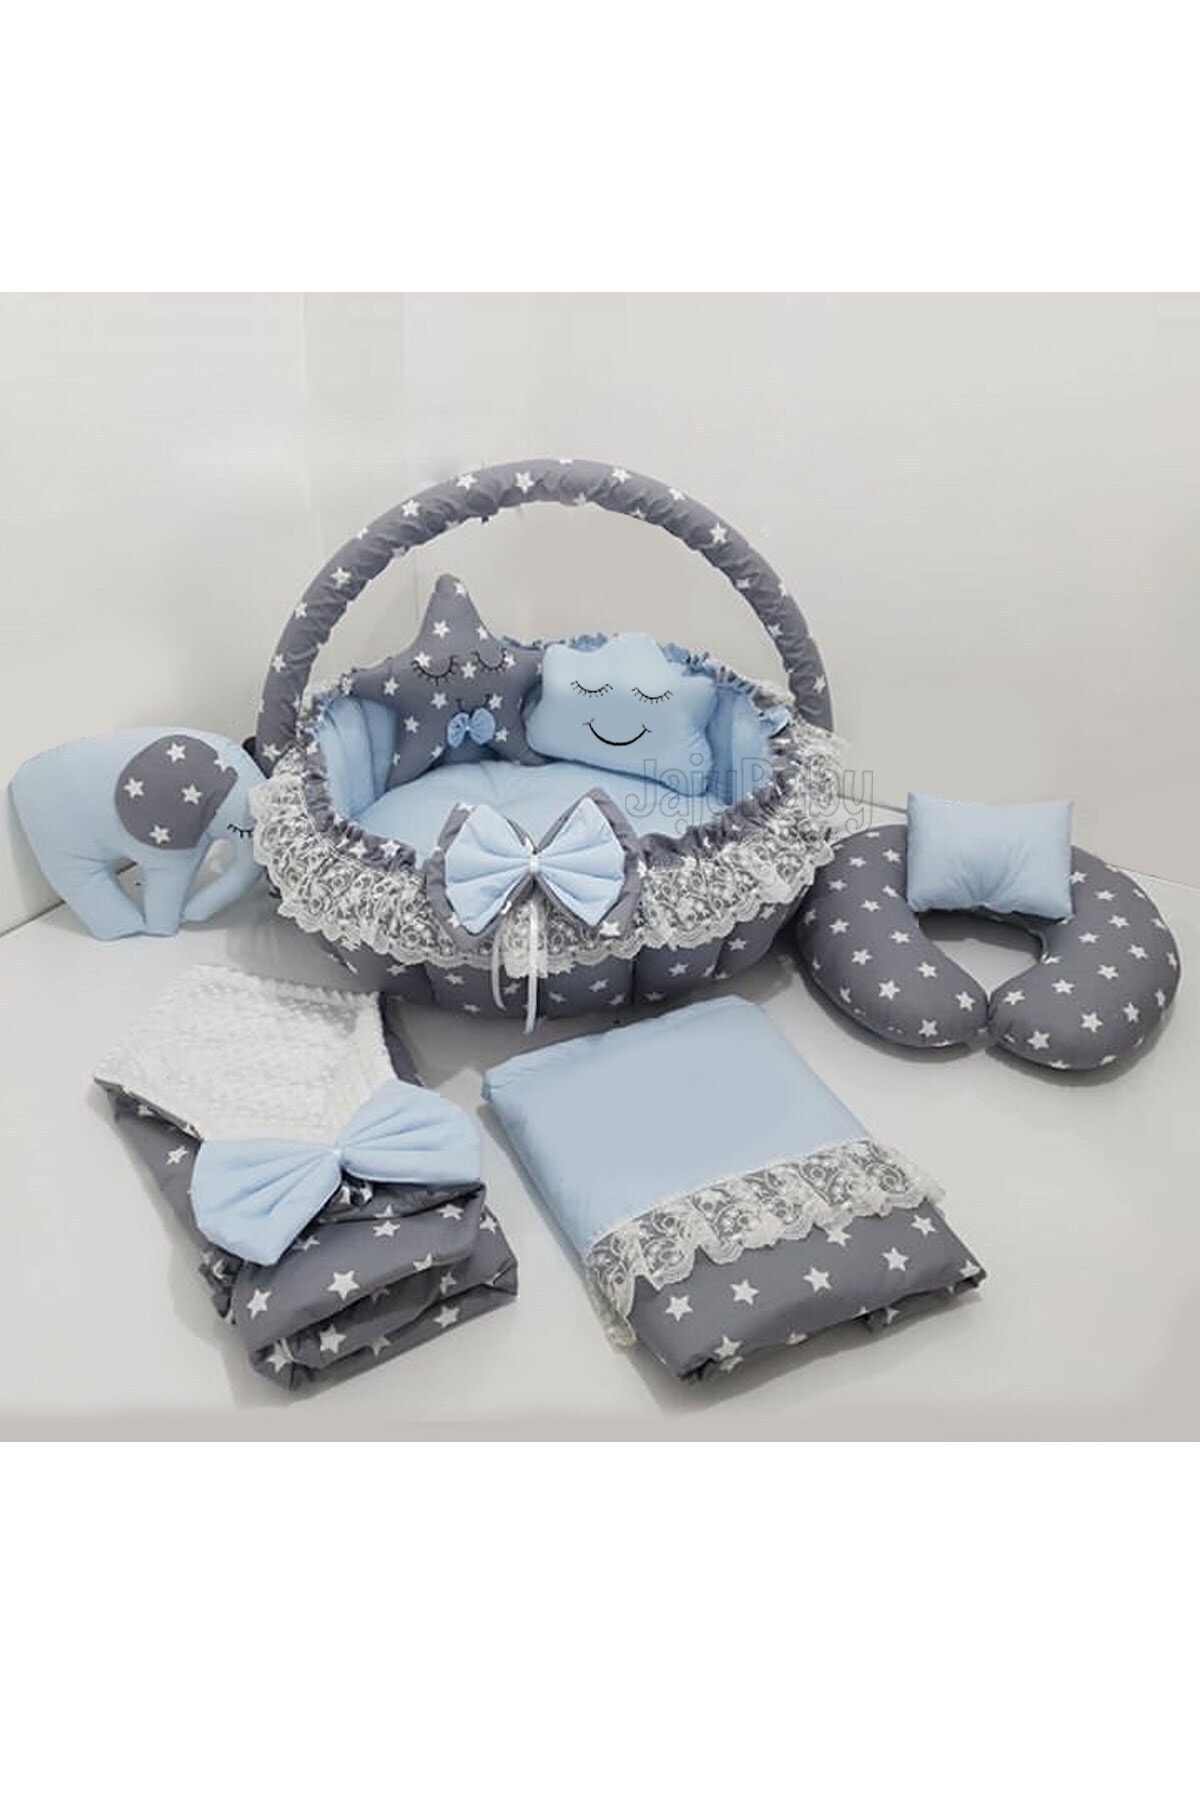 Jaju Baby Nest Gri Yıldız Mavi Tasarım Oyun Minderi Jaju-babynest Anne Yanı Bebek Yatağı8 Parça Set